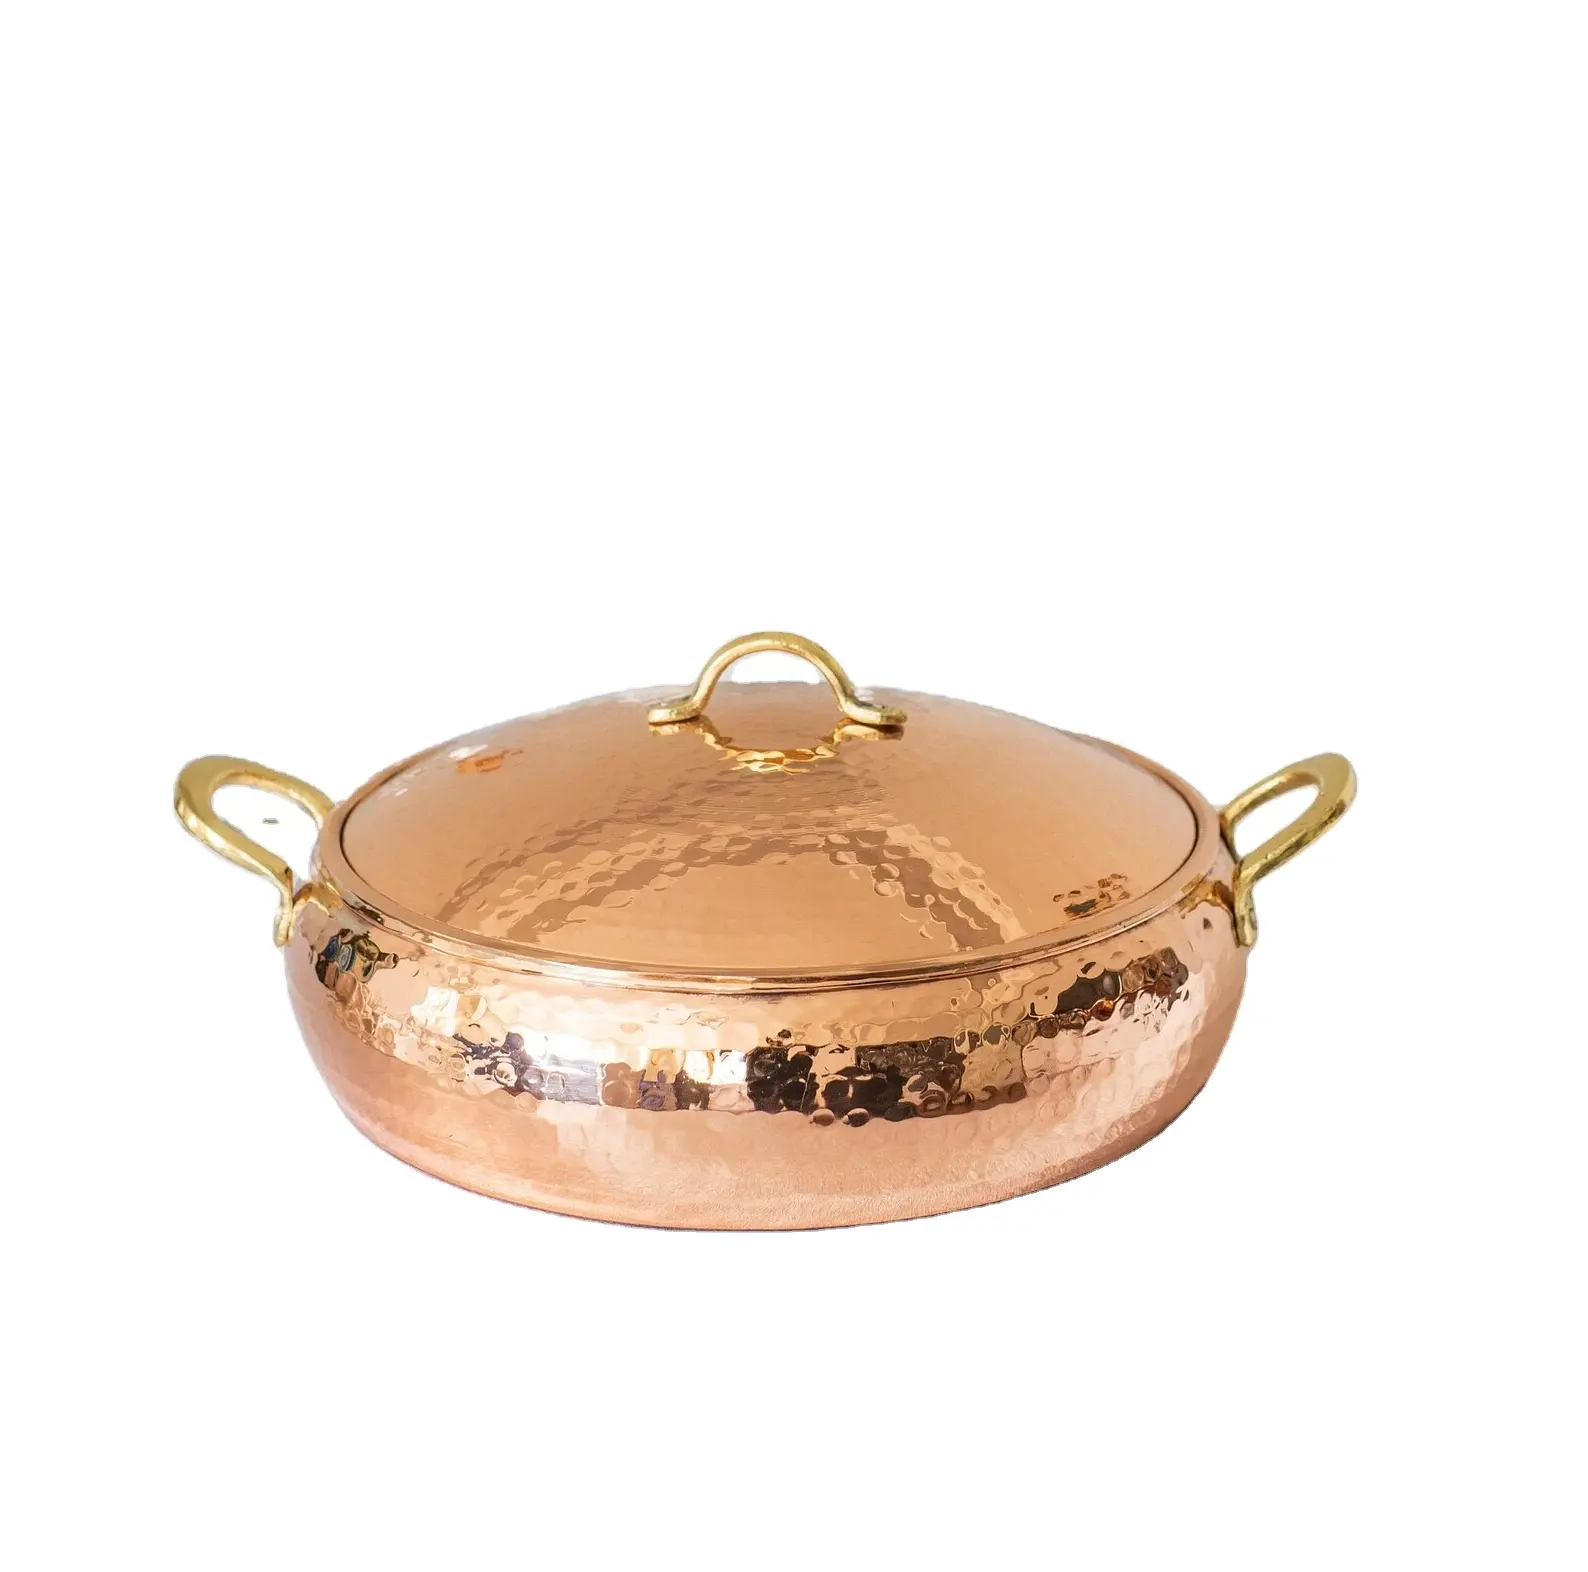 뚜껑 세트 금속 포장 이중 손잡이 기능 에코 소재 원산지 유형 모양 GUA 망치 디자인 구리 주방 서빙 그릇